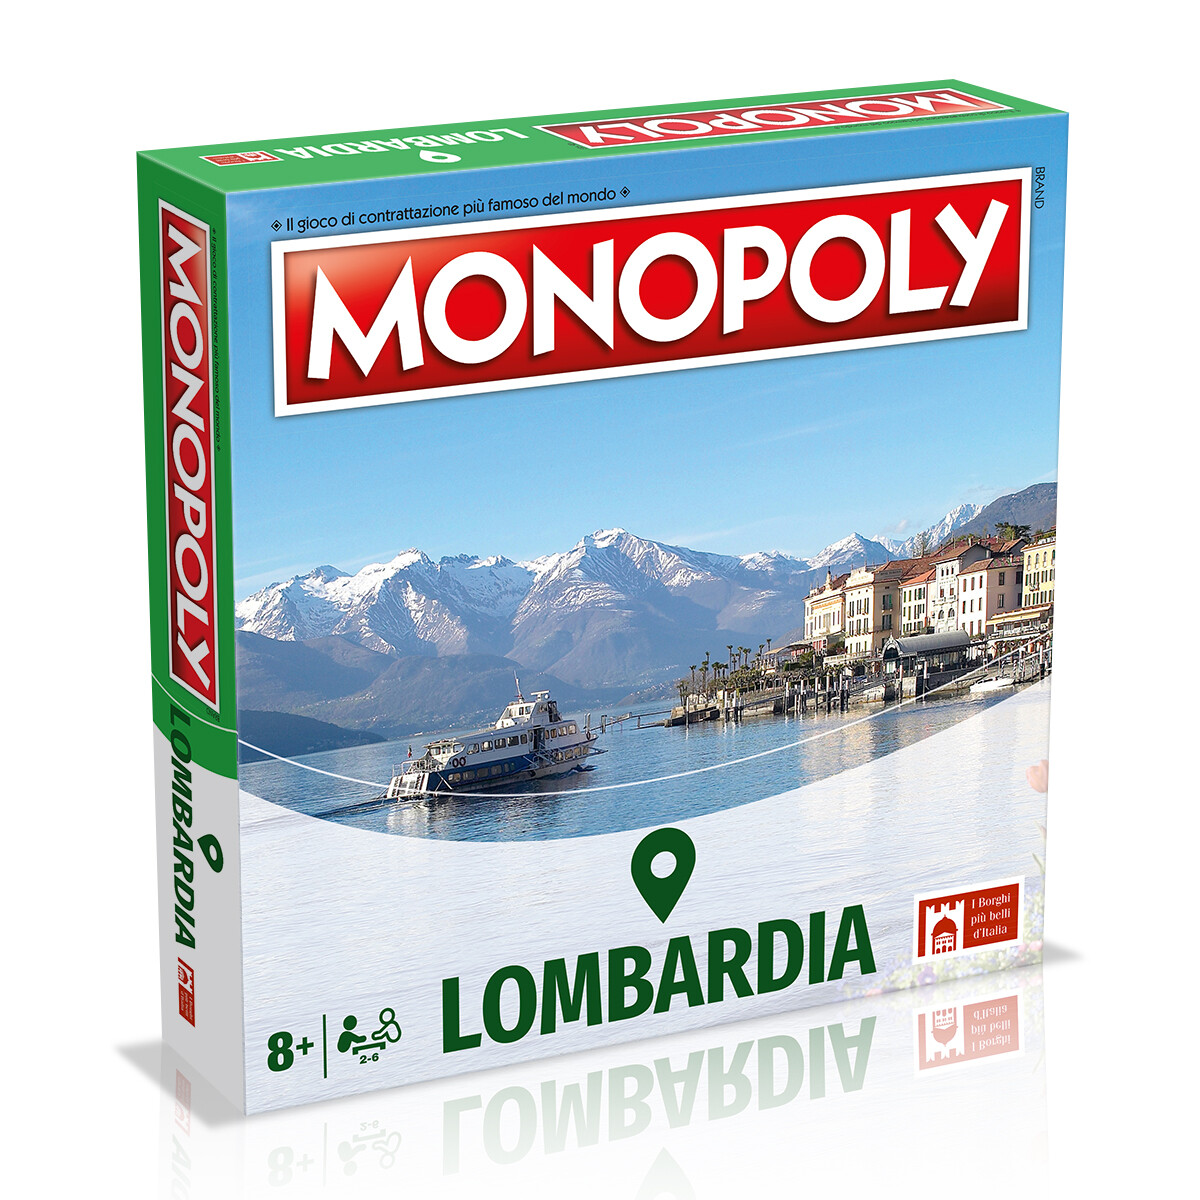 Monopoly - i borghi più belli d'italia - edizione lombardia - MONOPOLY